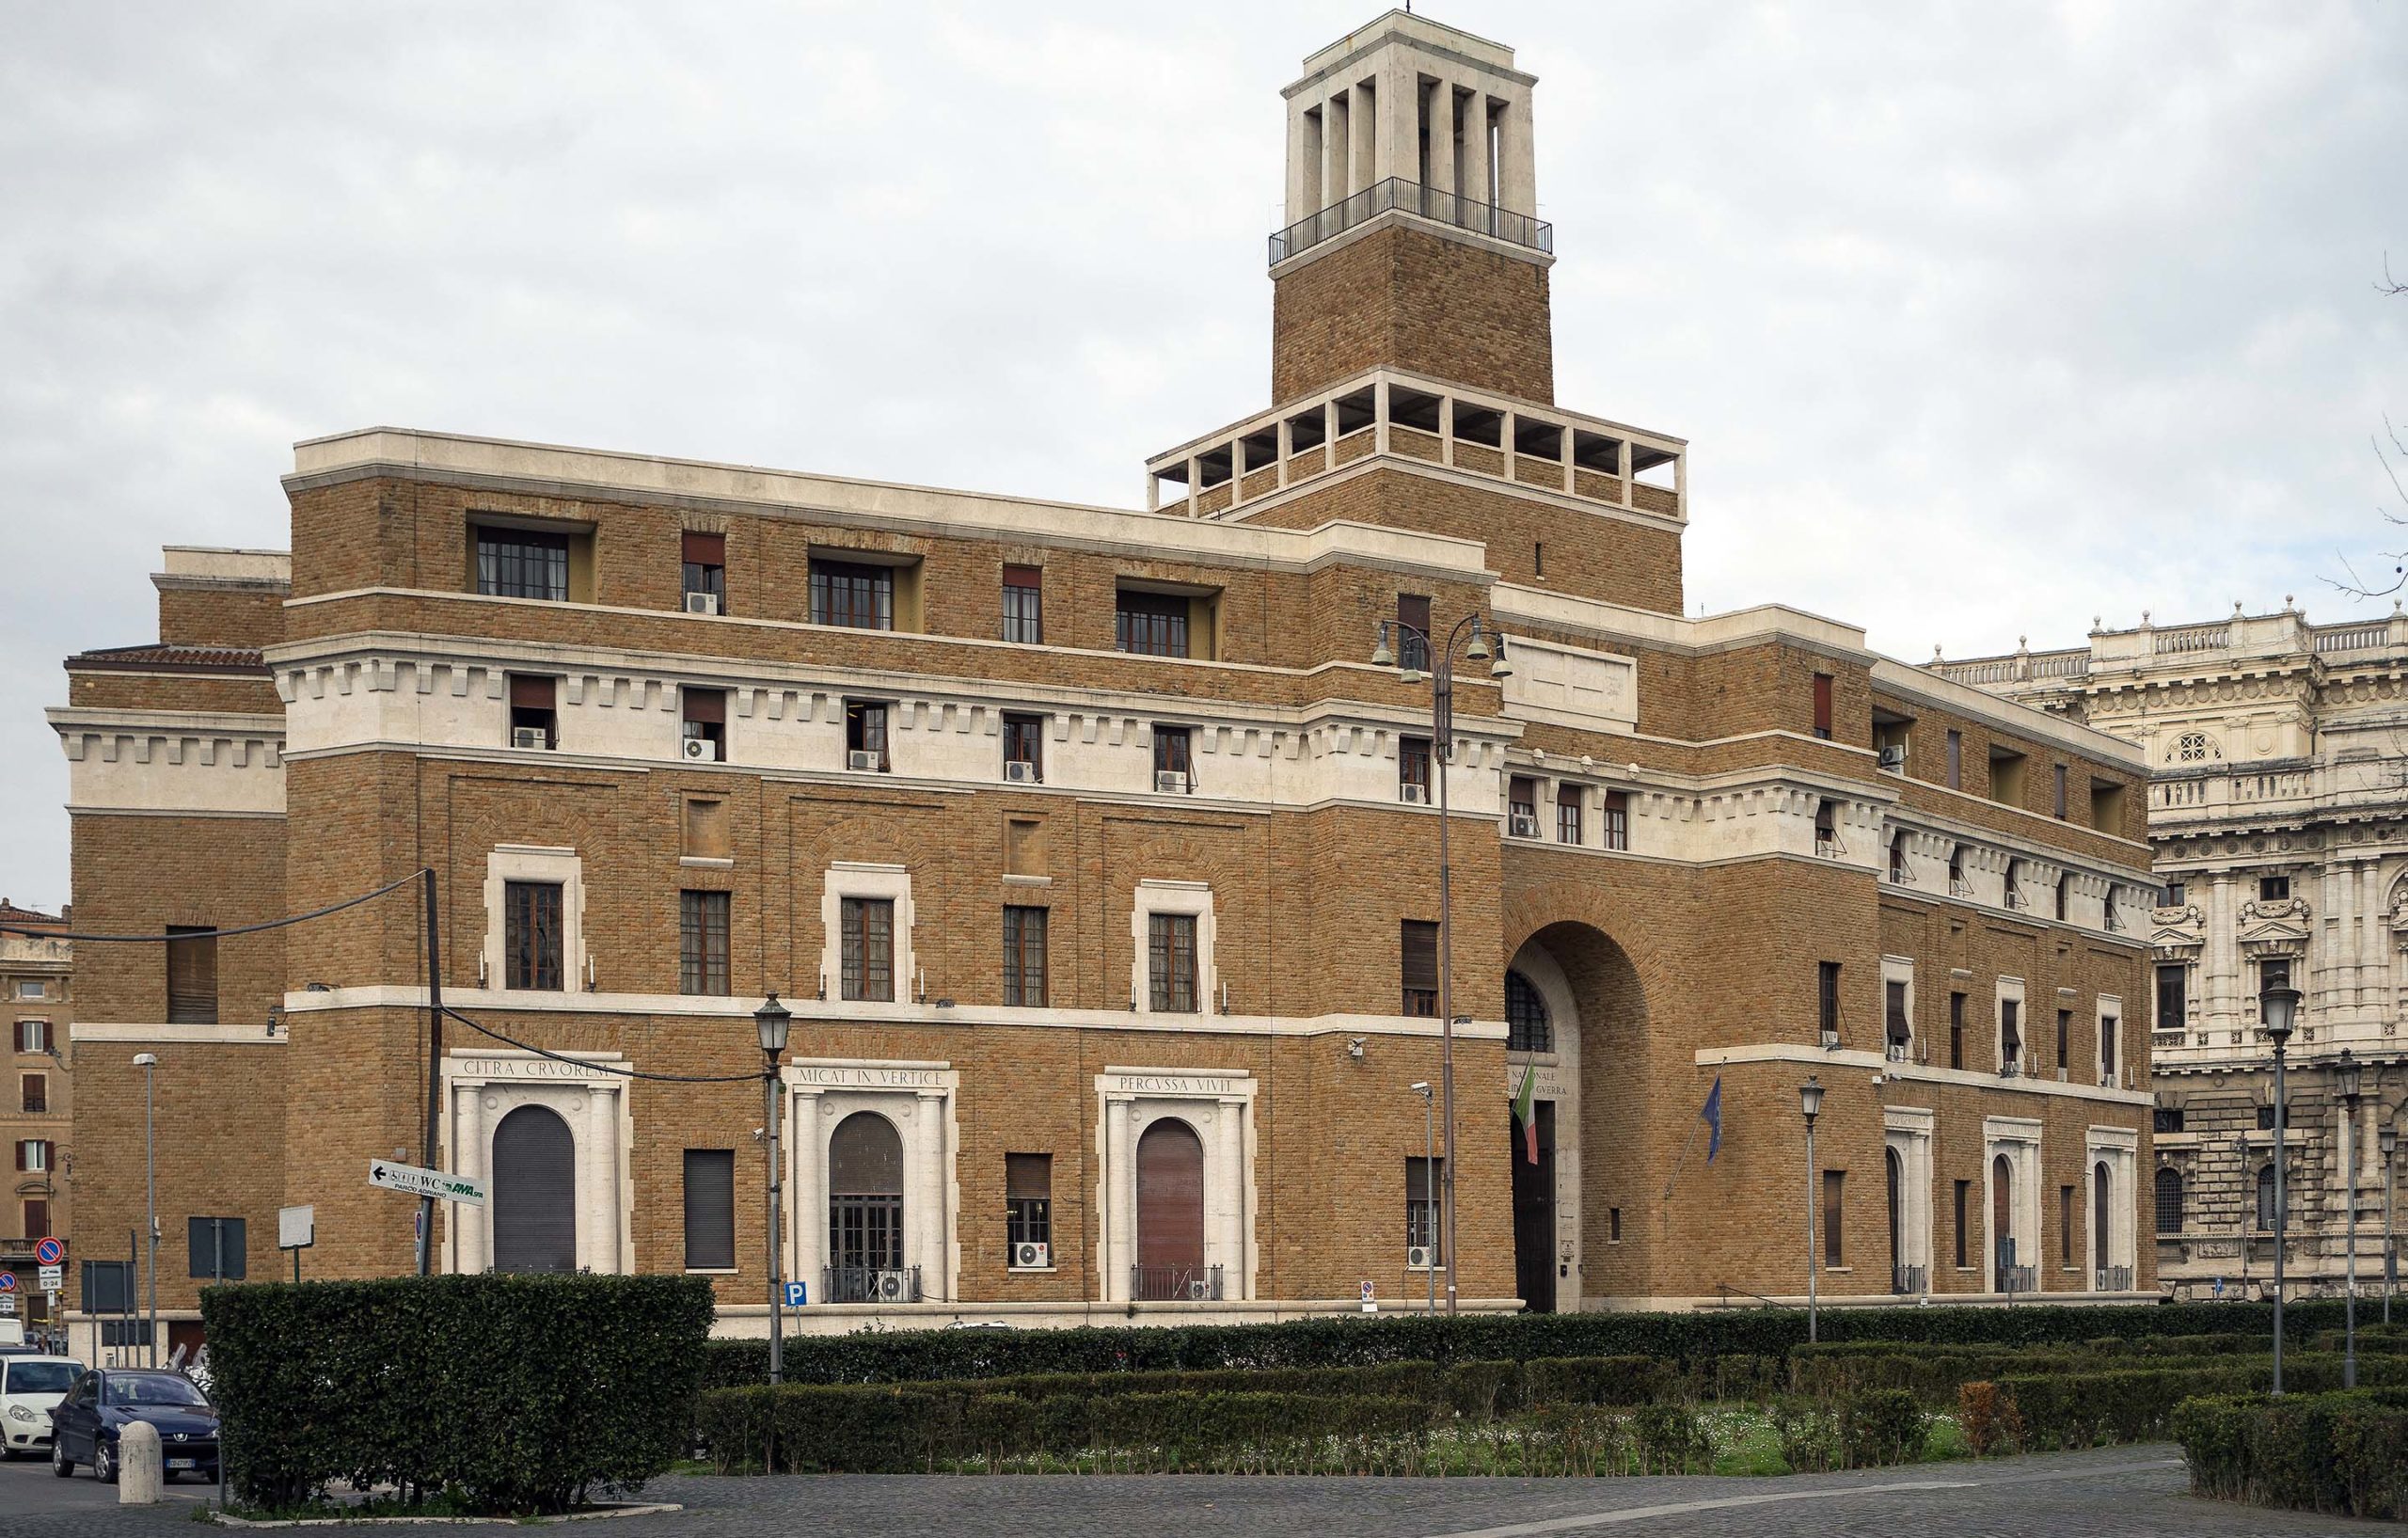 Casa Madre Dell'Associazione Nazionale dei Mutilati e Invalidi di Guerra, Rome (photo: Alberti1492, CC0 1.0 Universal)